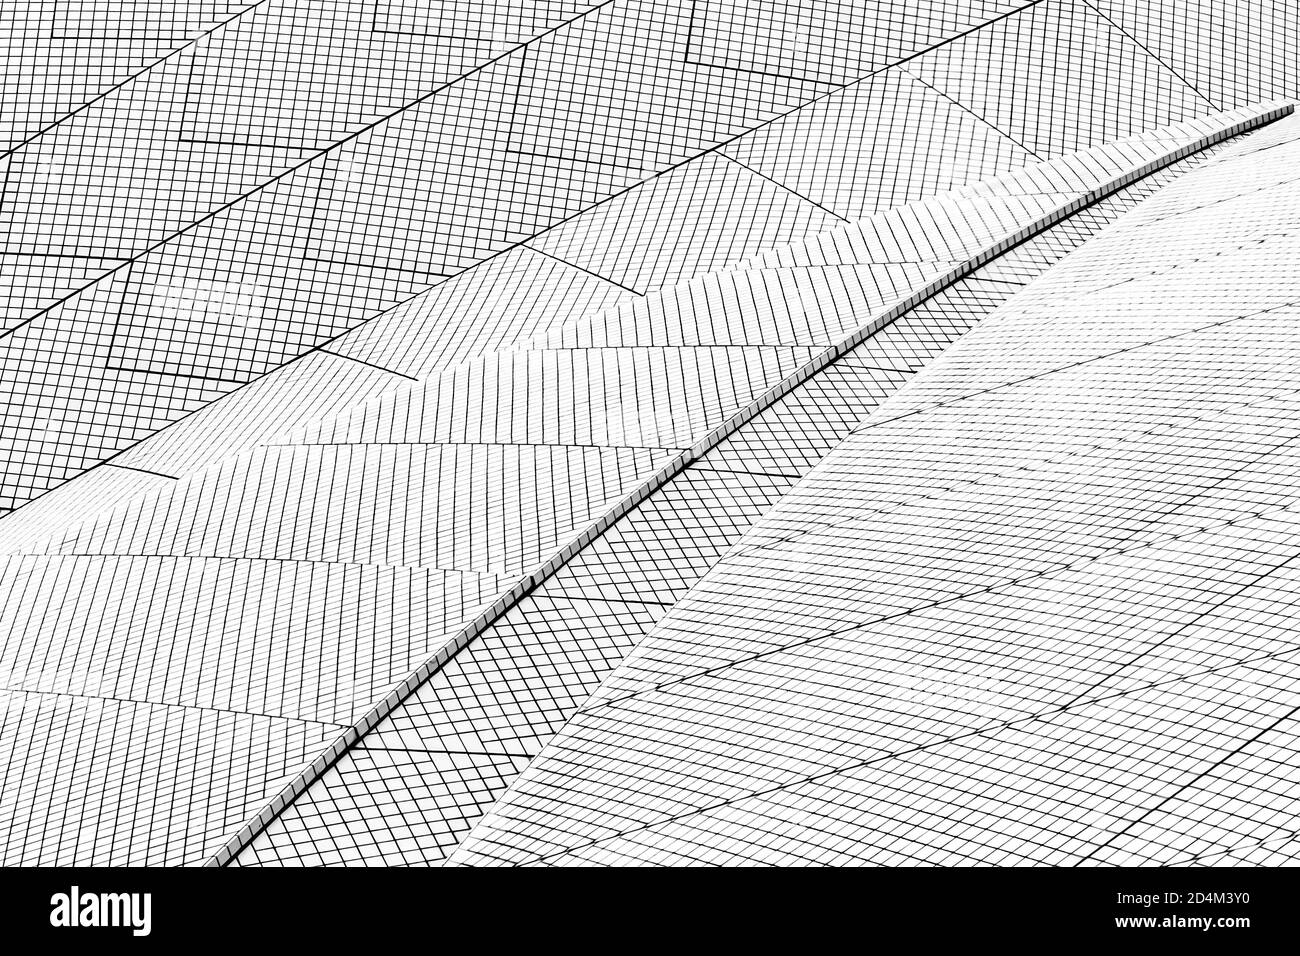 Sydney, Australia - 12 gennaio 2009: Frammento di tetto della Sydney Opera House fatto di azulejo, vetro, piastrelle di ceramica tetto. Foto Stock